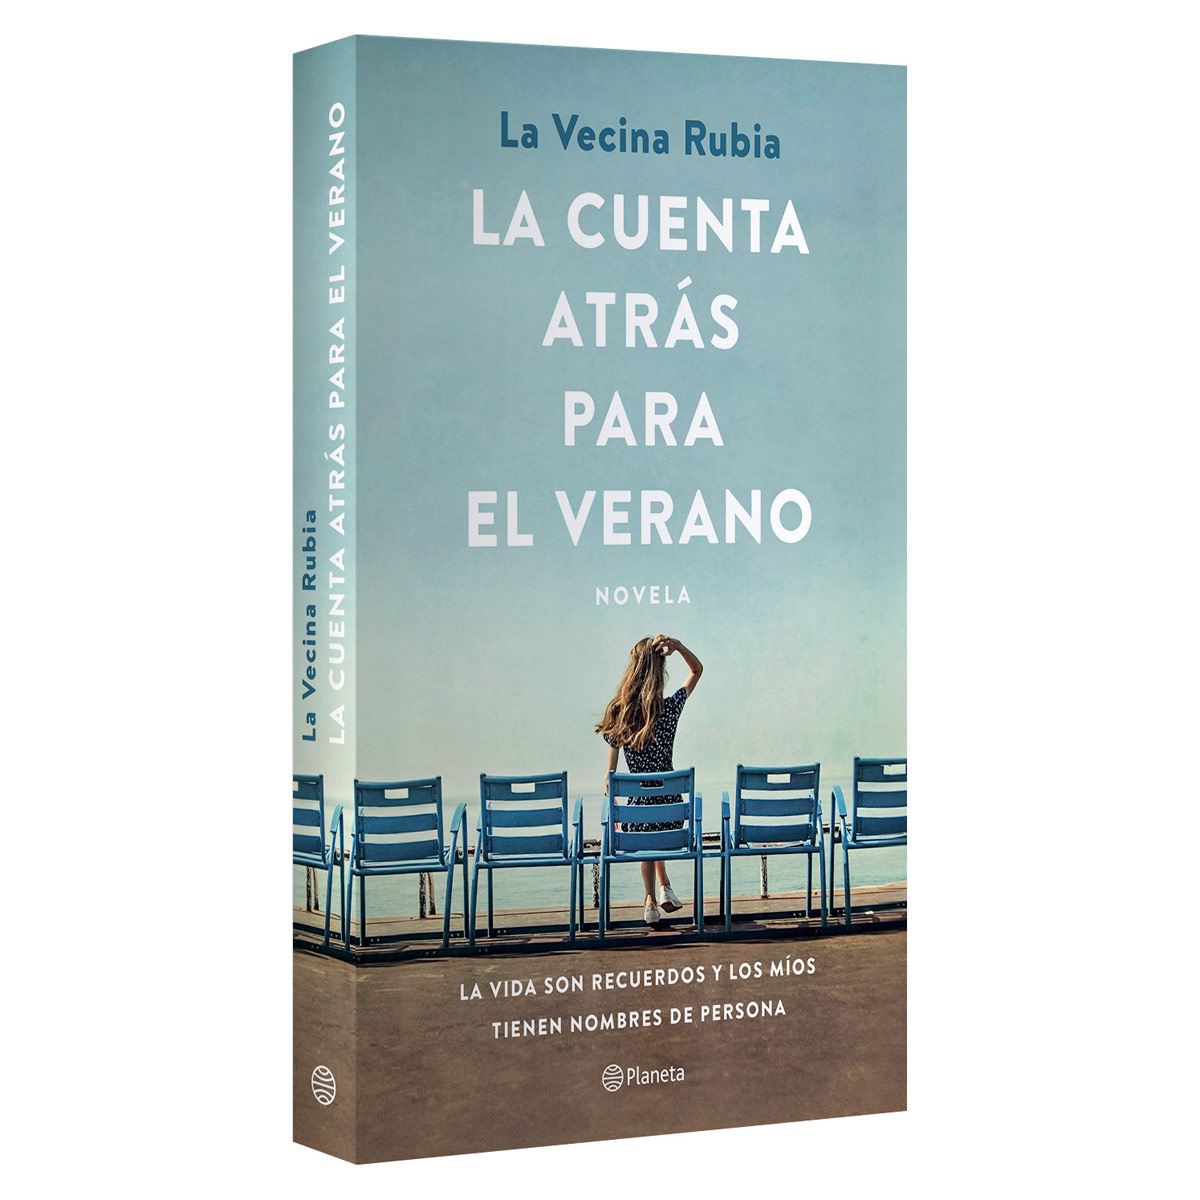 El libro de La Vecina Rubia, 'La cuenta atrás para el verano', ya se puede  comprar en